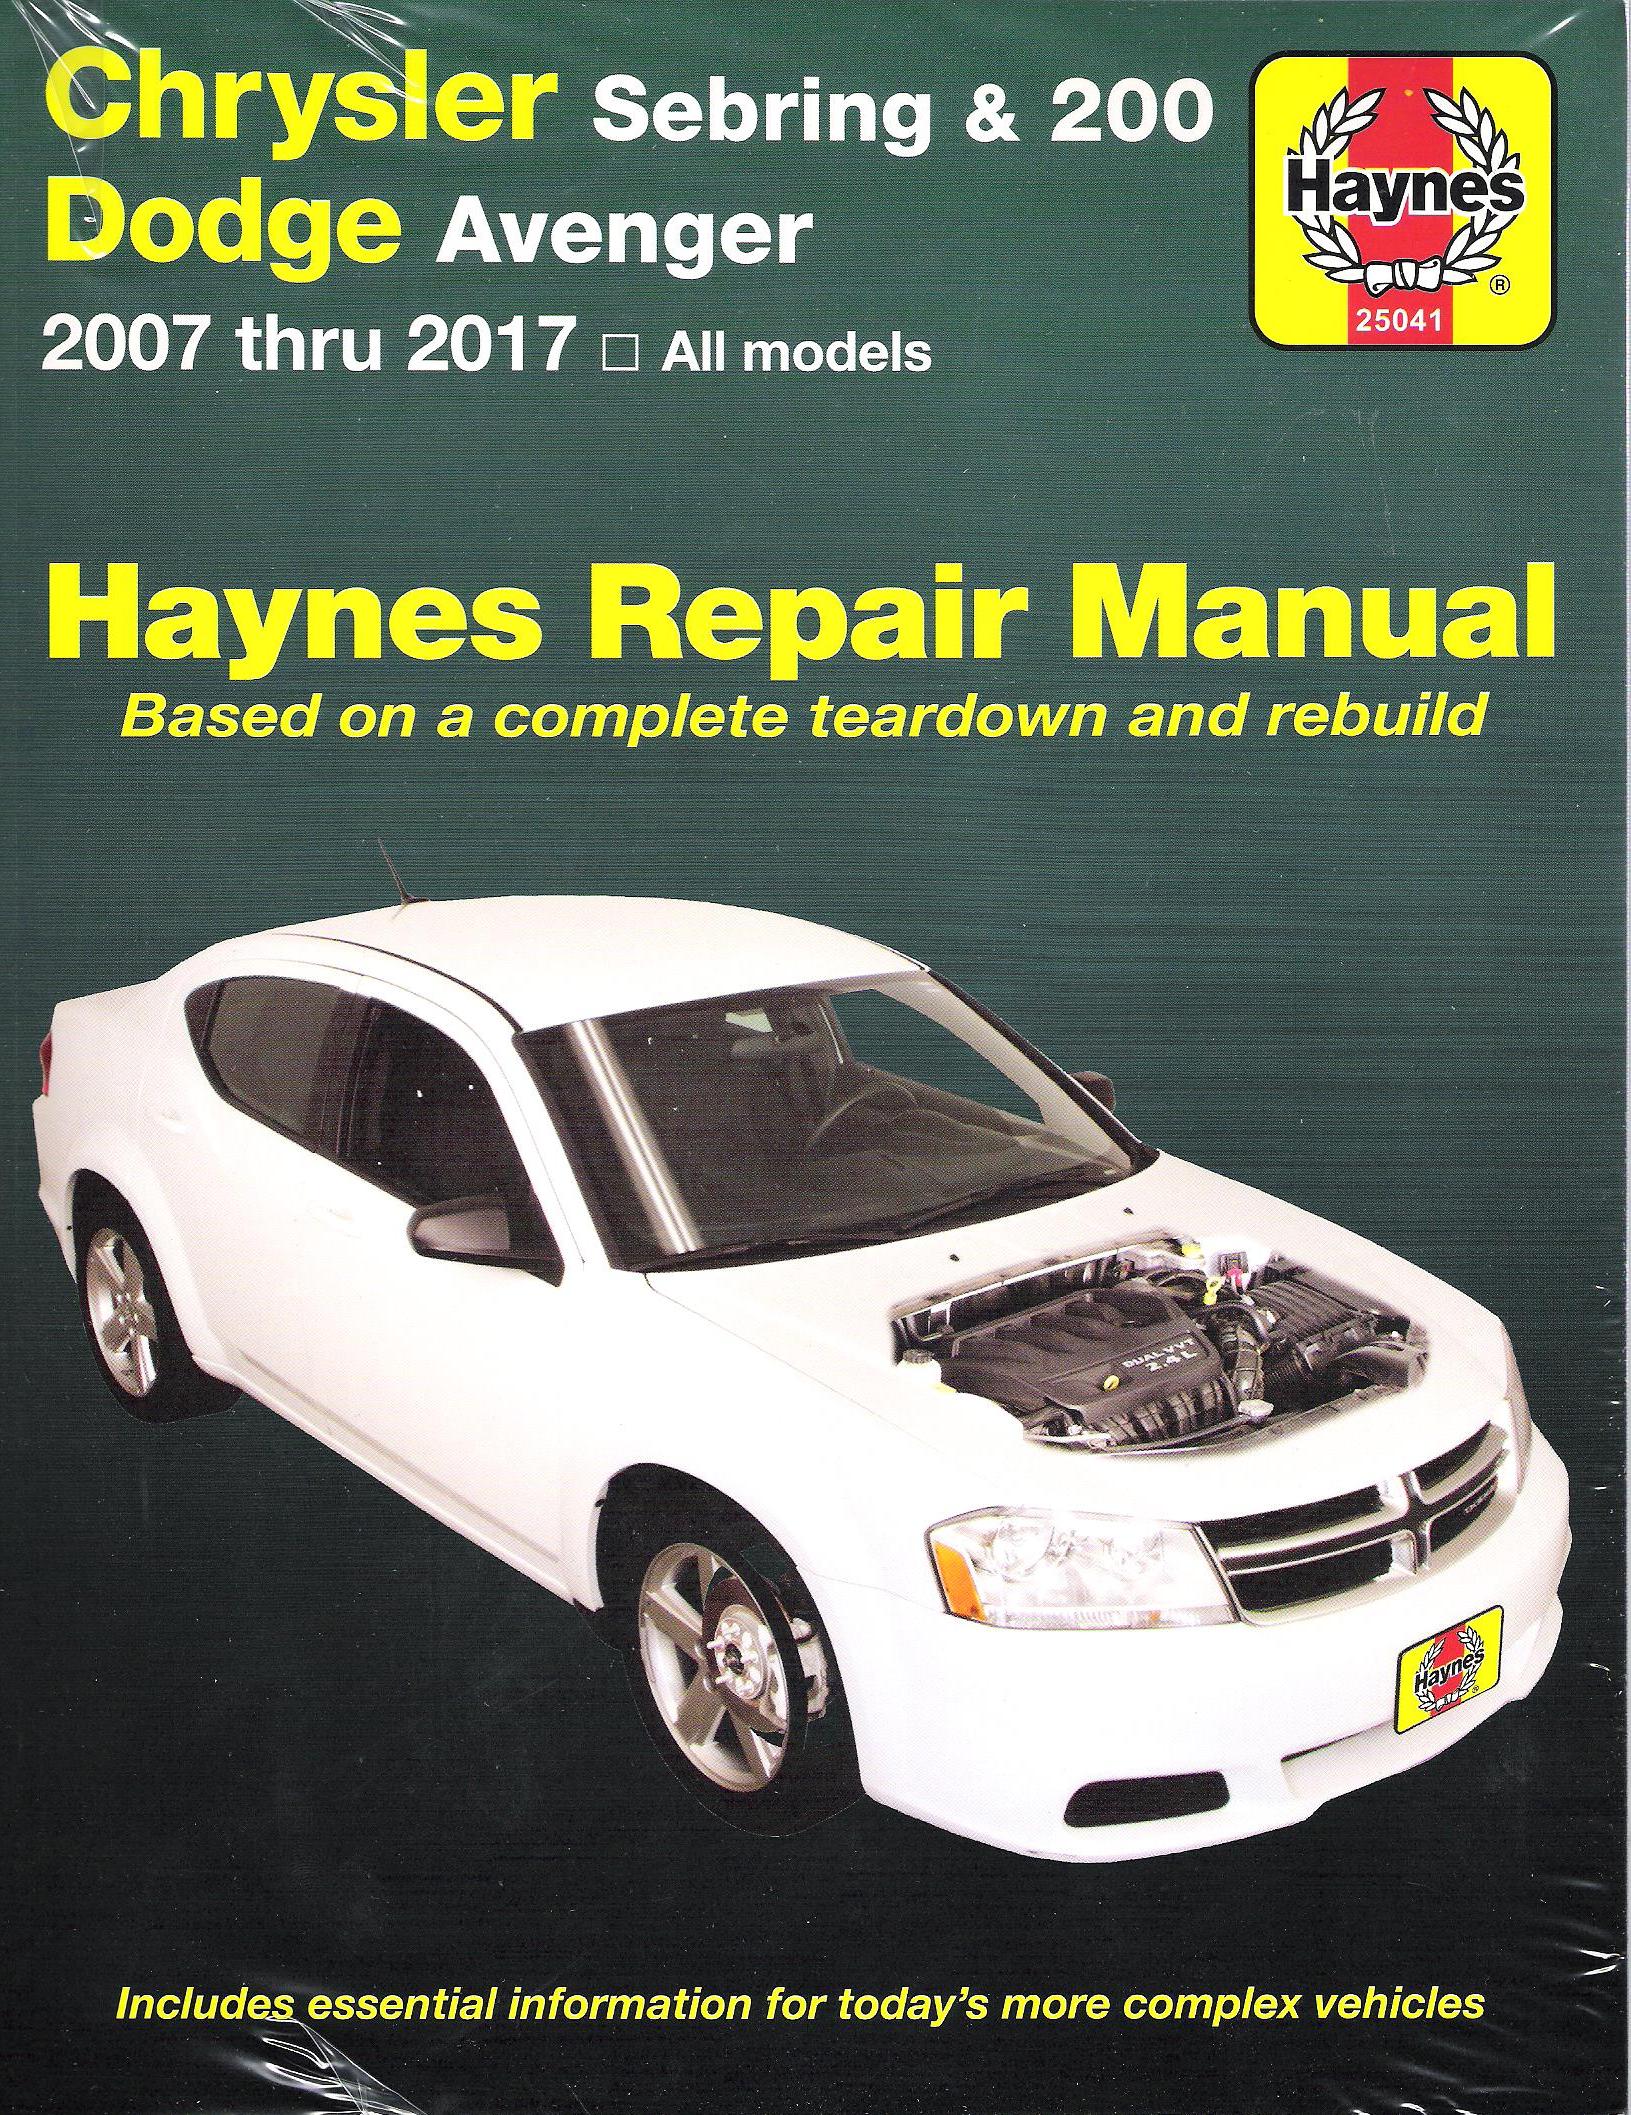 2007 - 2017 Chrysler Sebring & 200 Dodge Avenger Haynes Repair Manual